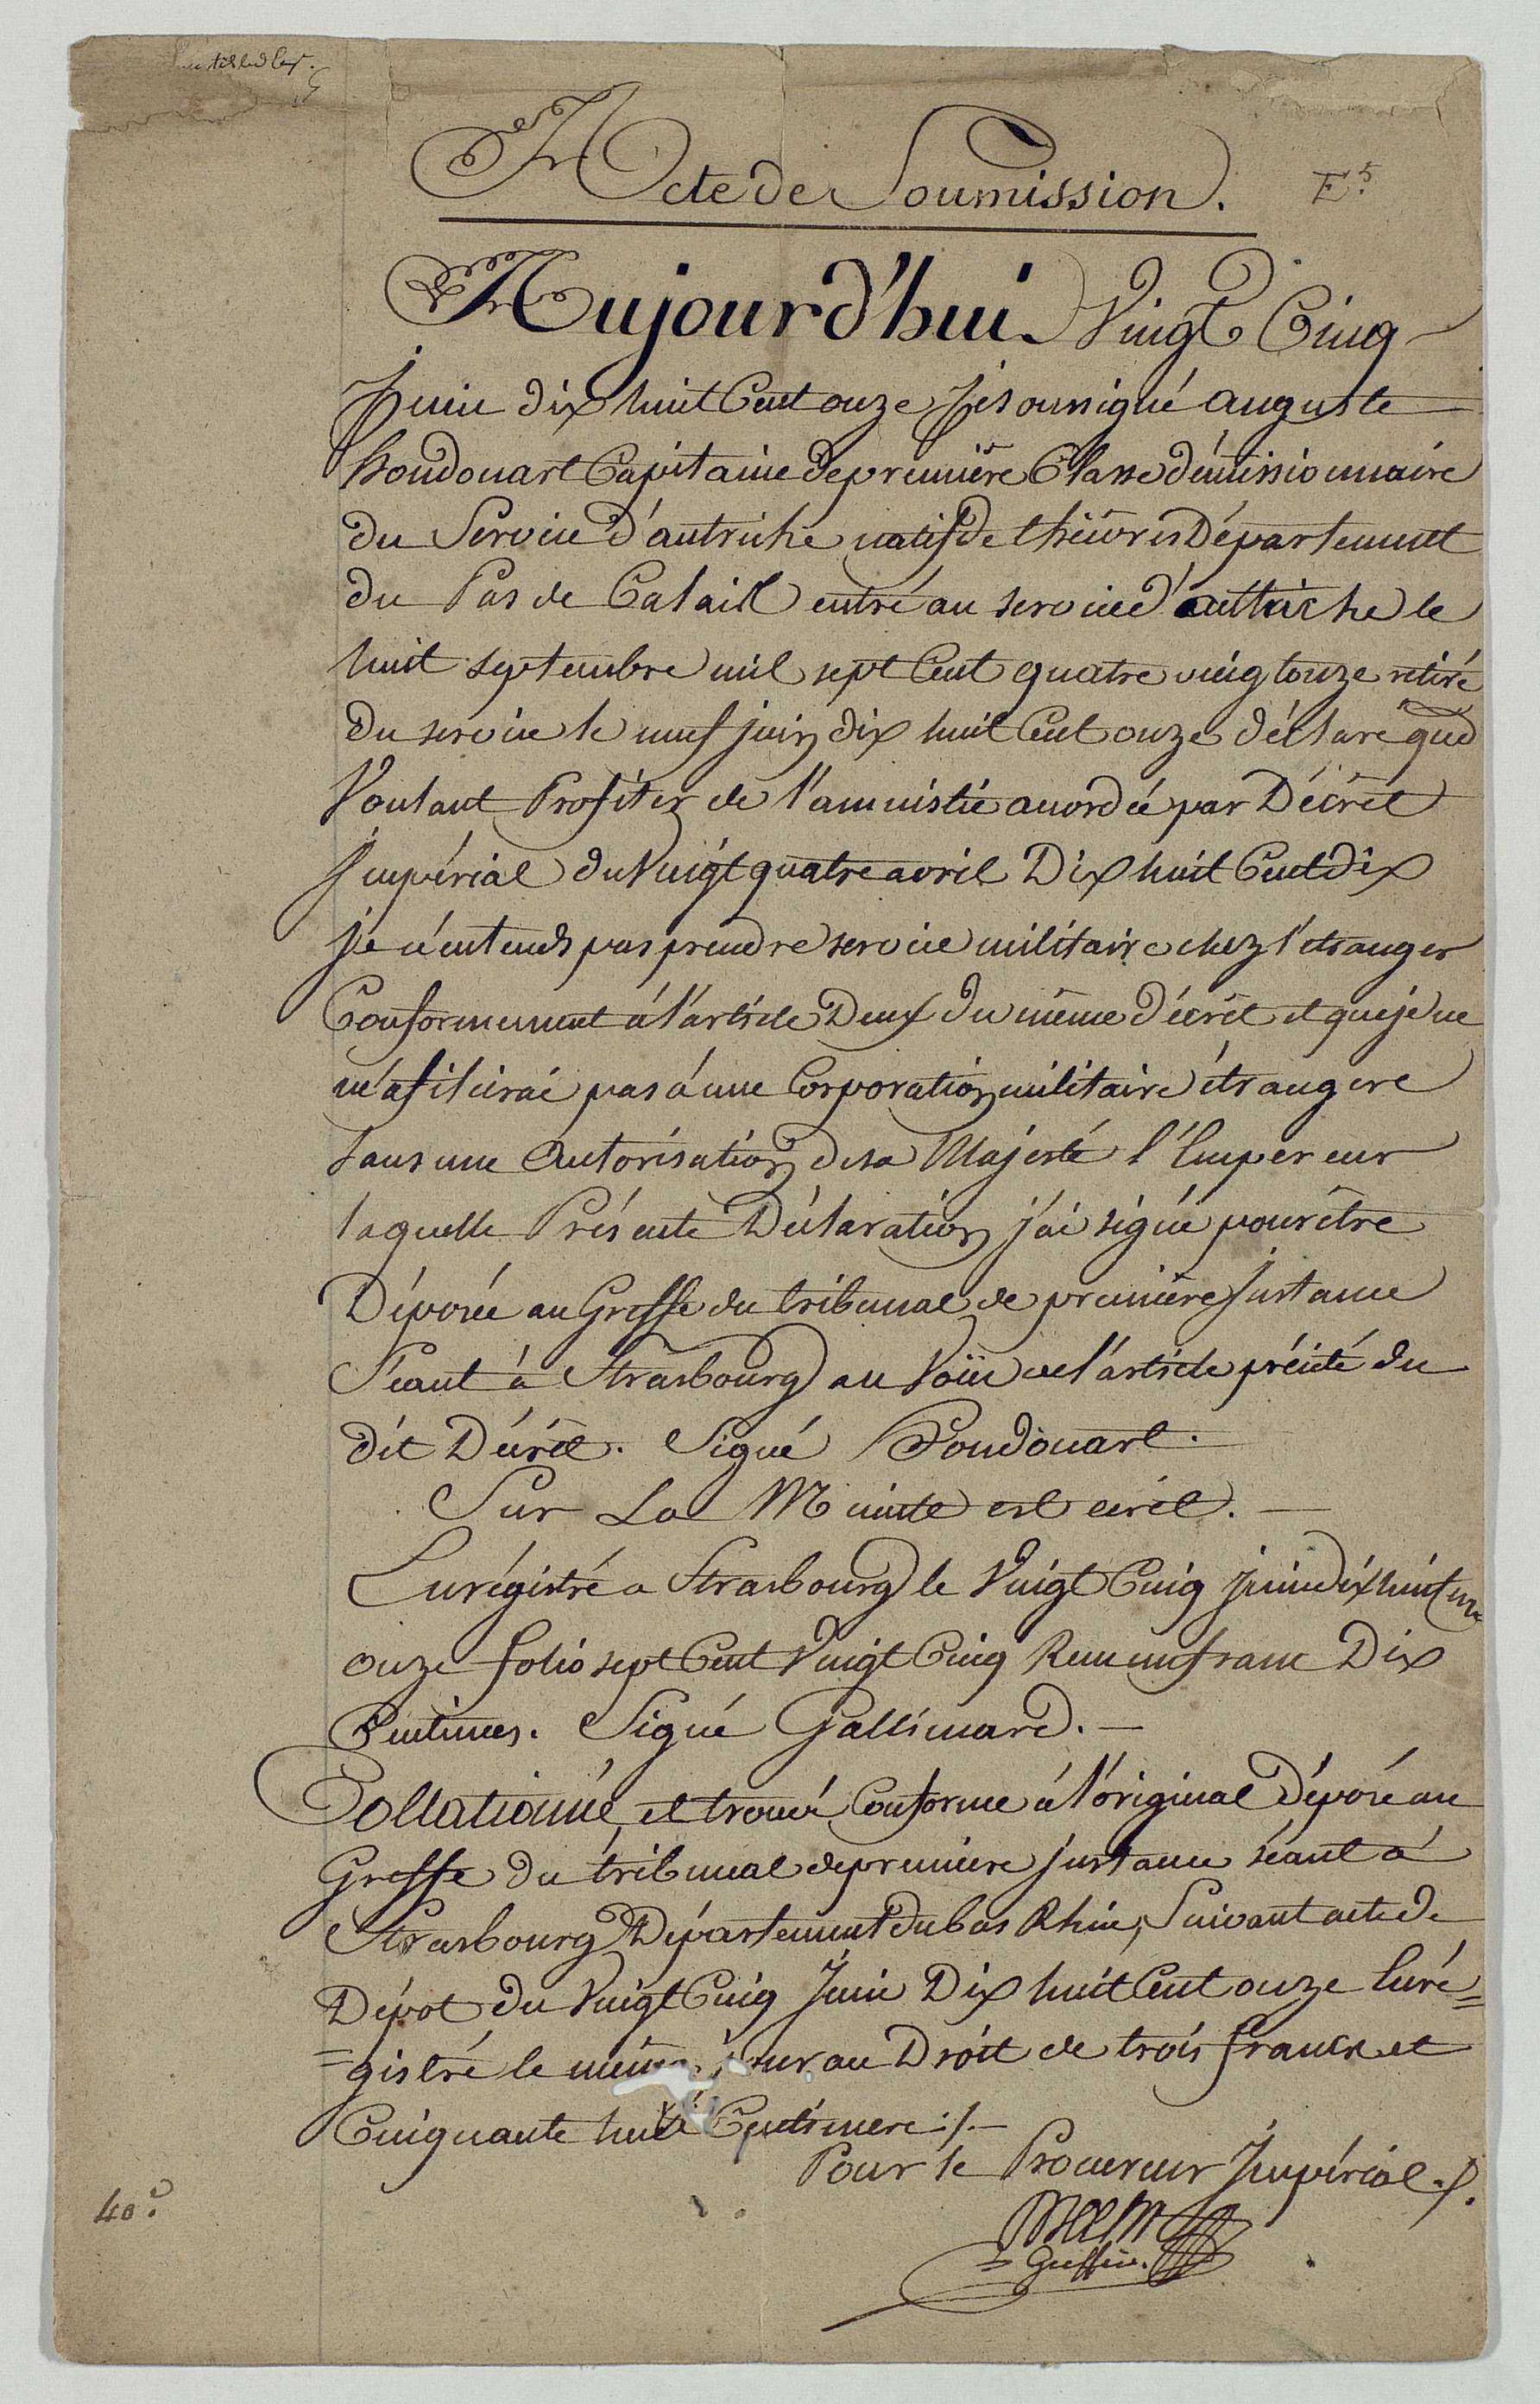 Copie de l'acte de soumission d'Auguste Houdouart de Thièvres, démissionnaire de l'armée autrichienne, qui s'engage à ne plus prendre du service dans une armée étrangère et souhaite profiter de l'amnistie accordée par décret impérial du 24 avril 1810 (Strasbourg, 25 juin 1811).